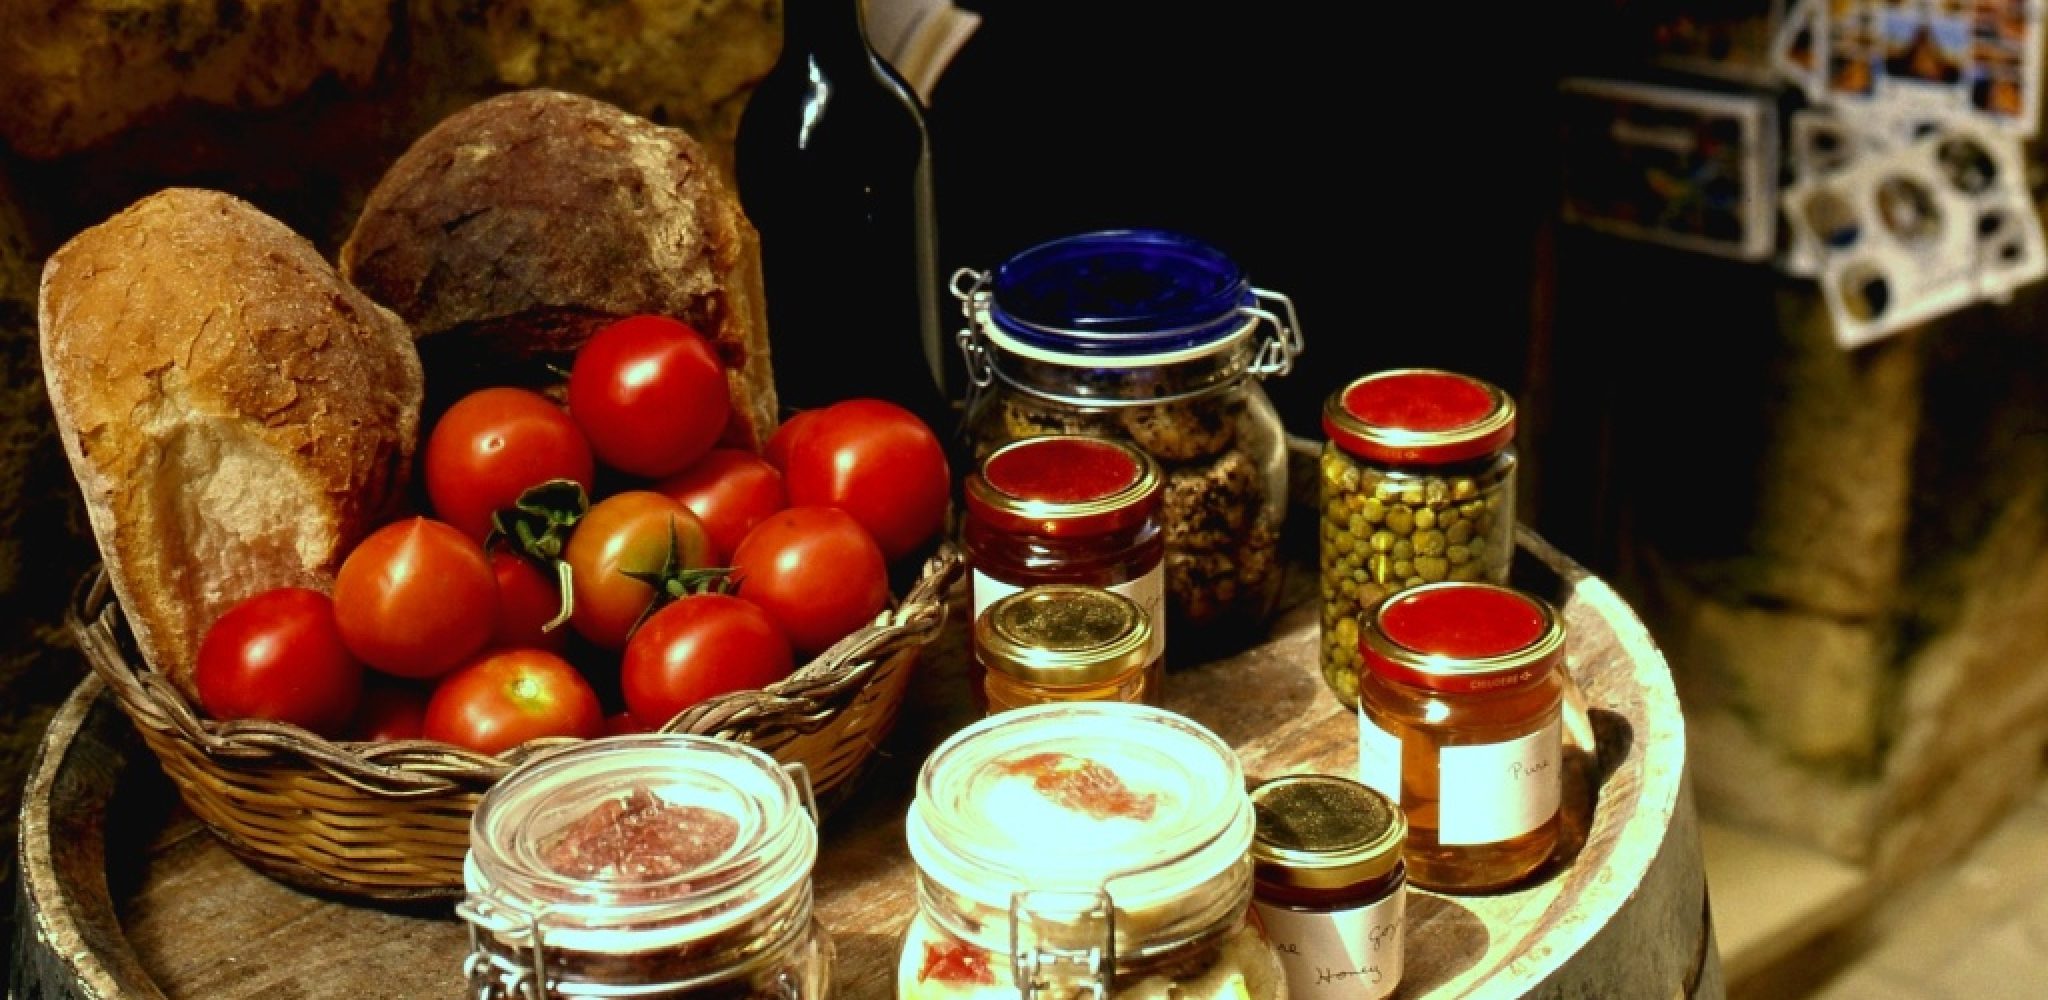 Malta Spezialitäten, Brot und Eingemachtes (A. Gasterland)